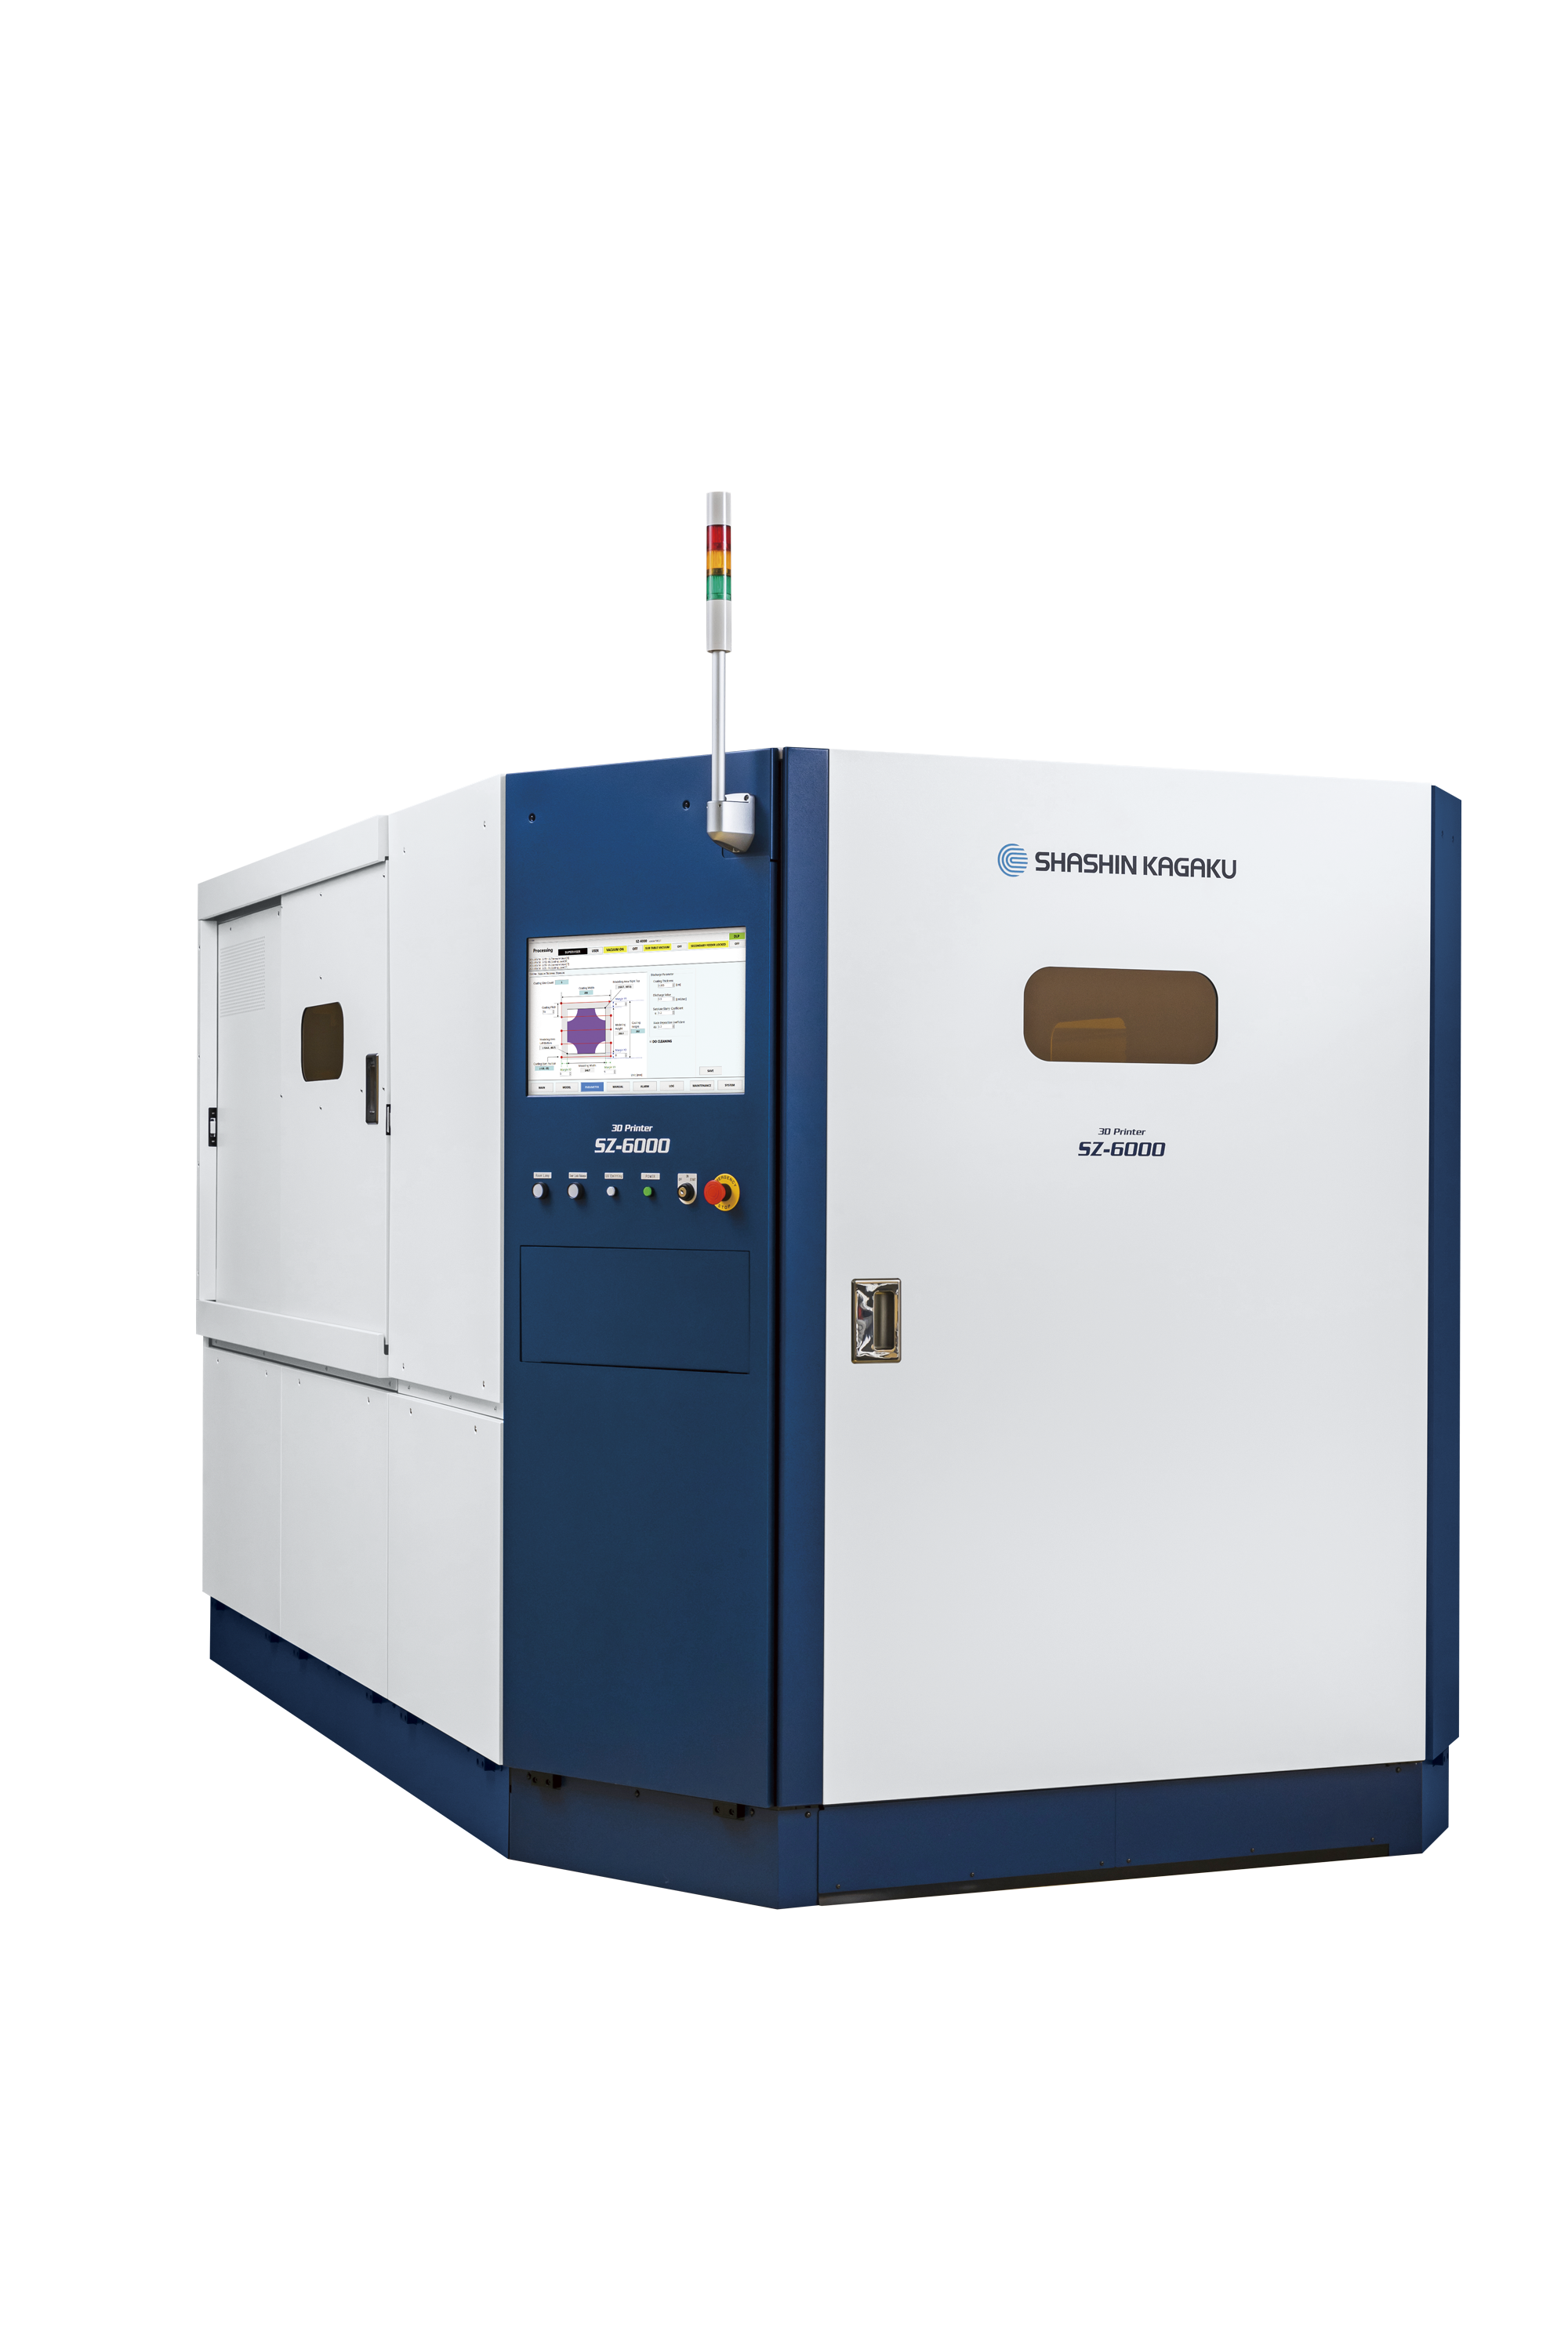 Der innovative 3D-Drucker SZ-6000: Wettbewerbsvorsprung für Shashin Kagaku und die Kunden des Unternehmens.